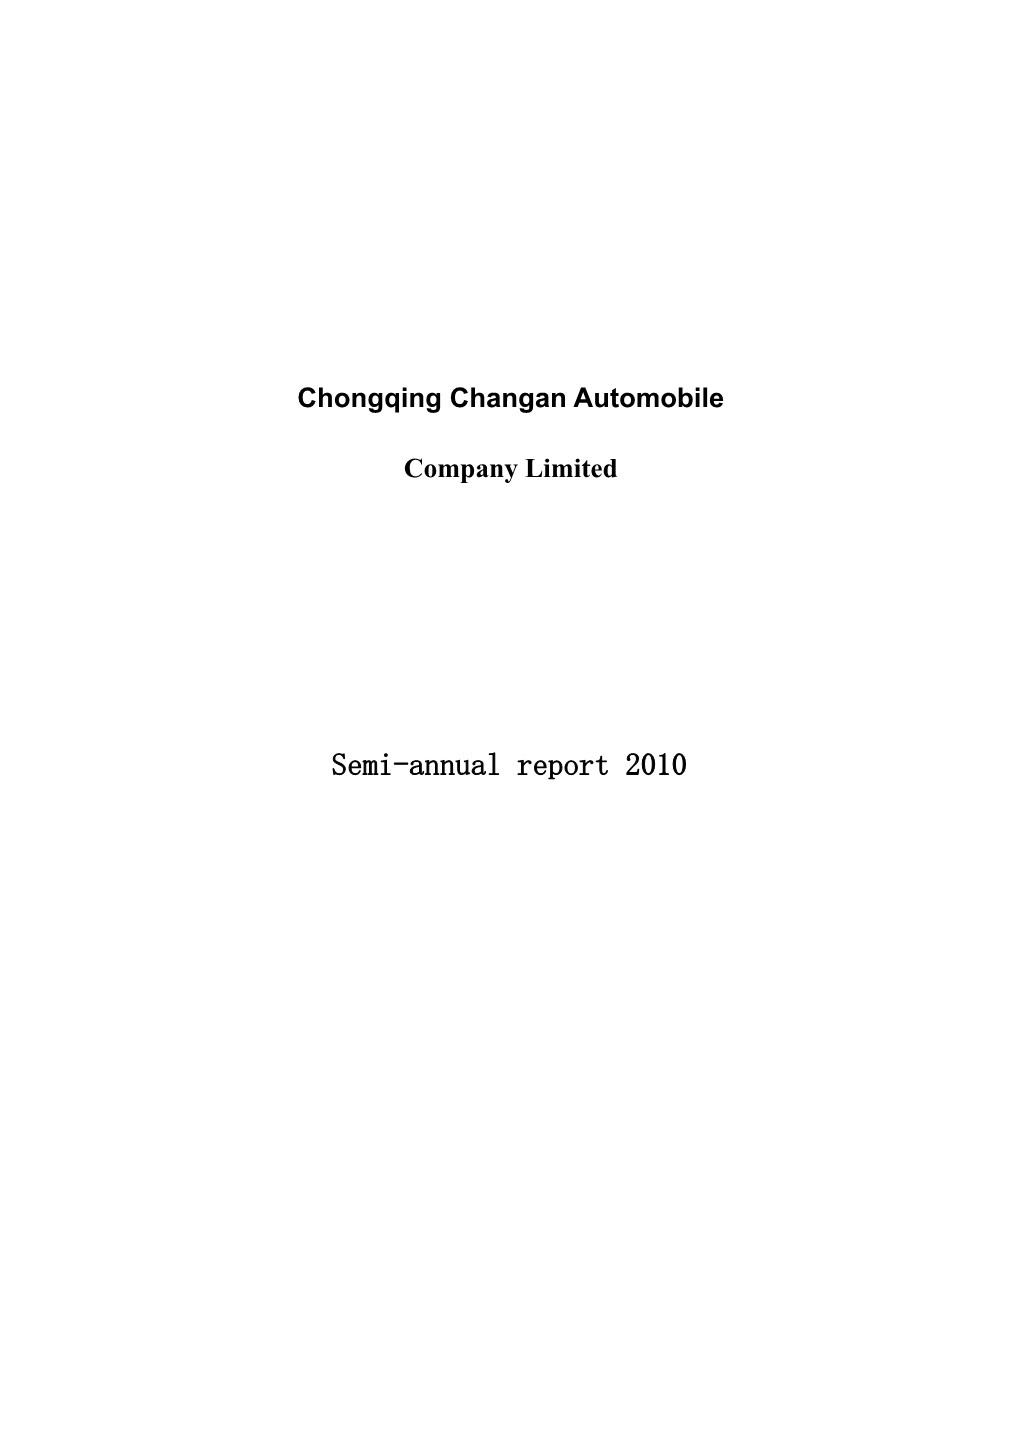 Semi-Annual Report 2010